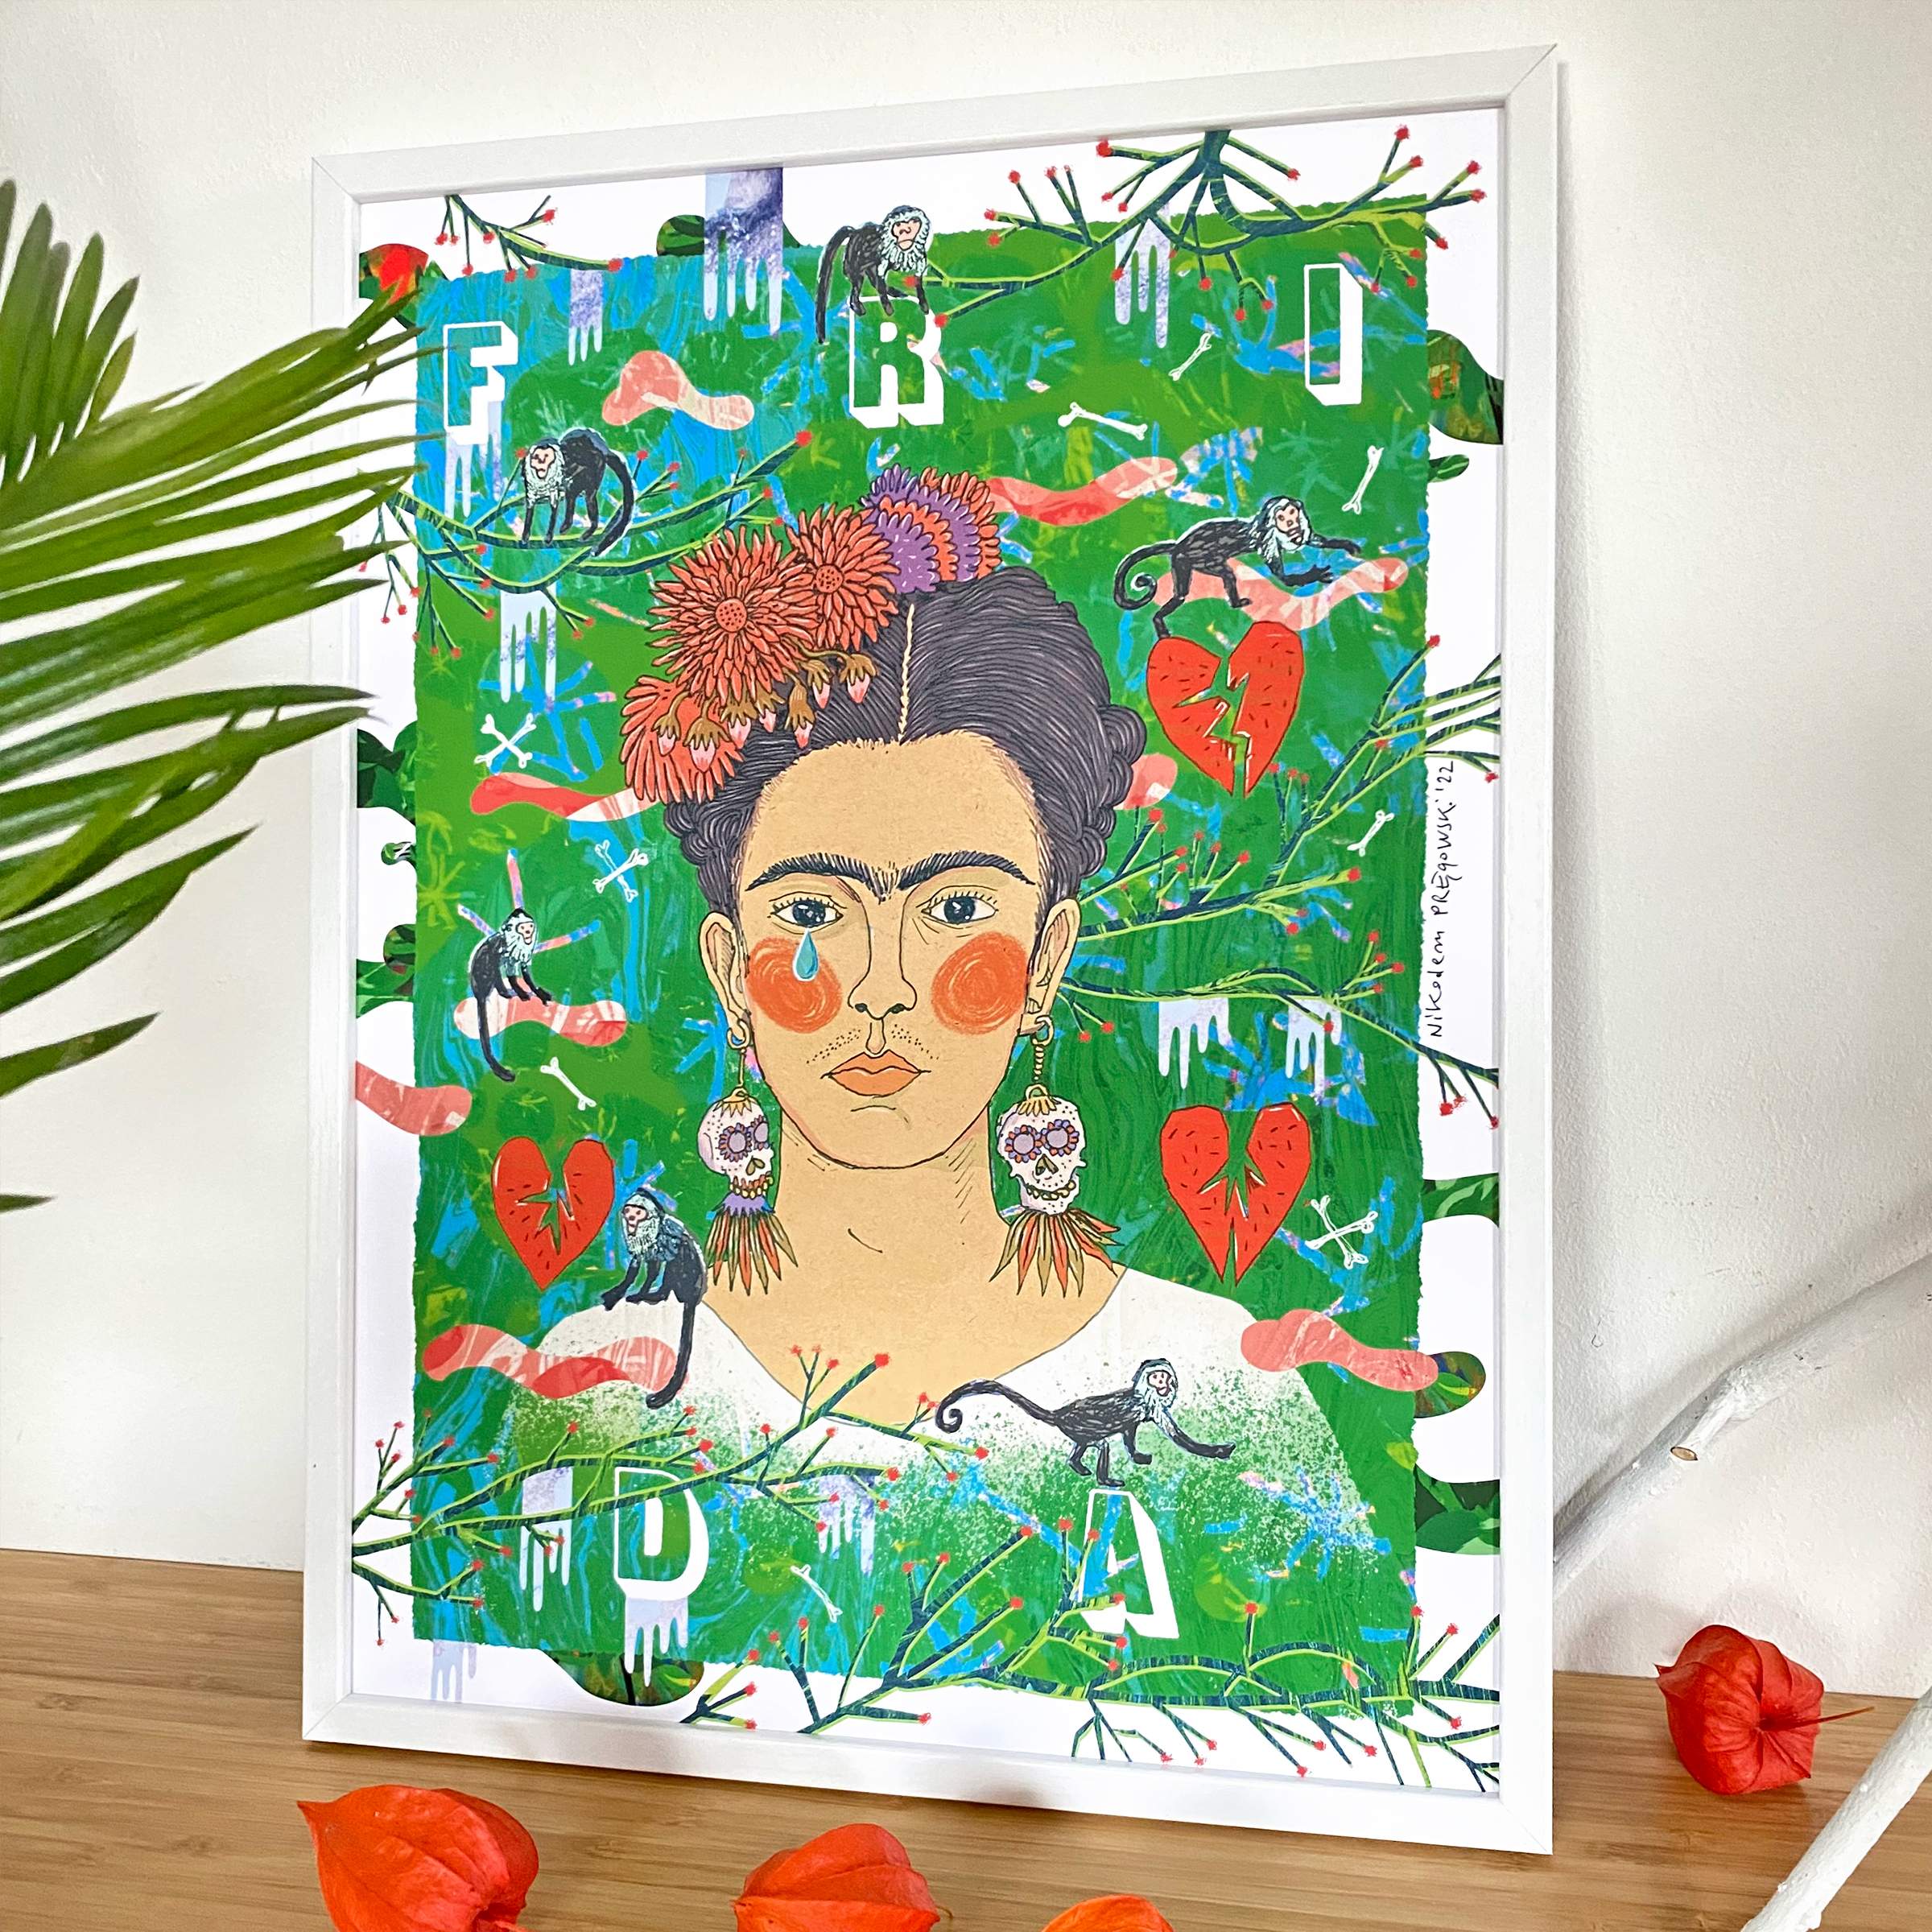 FRIDA Kahlo